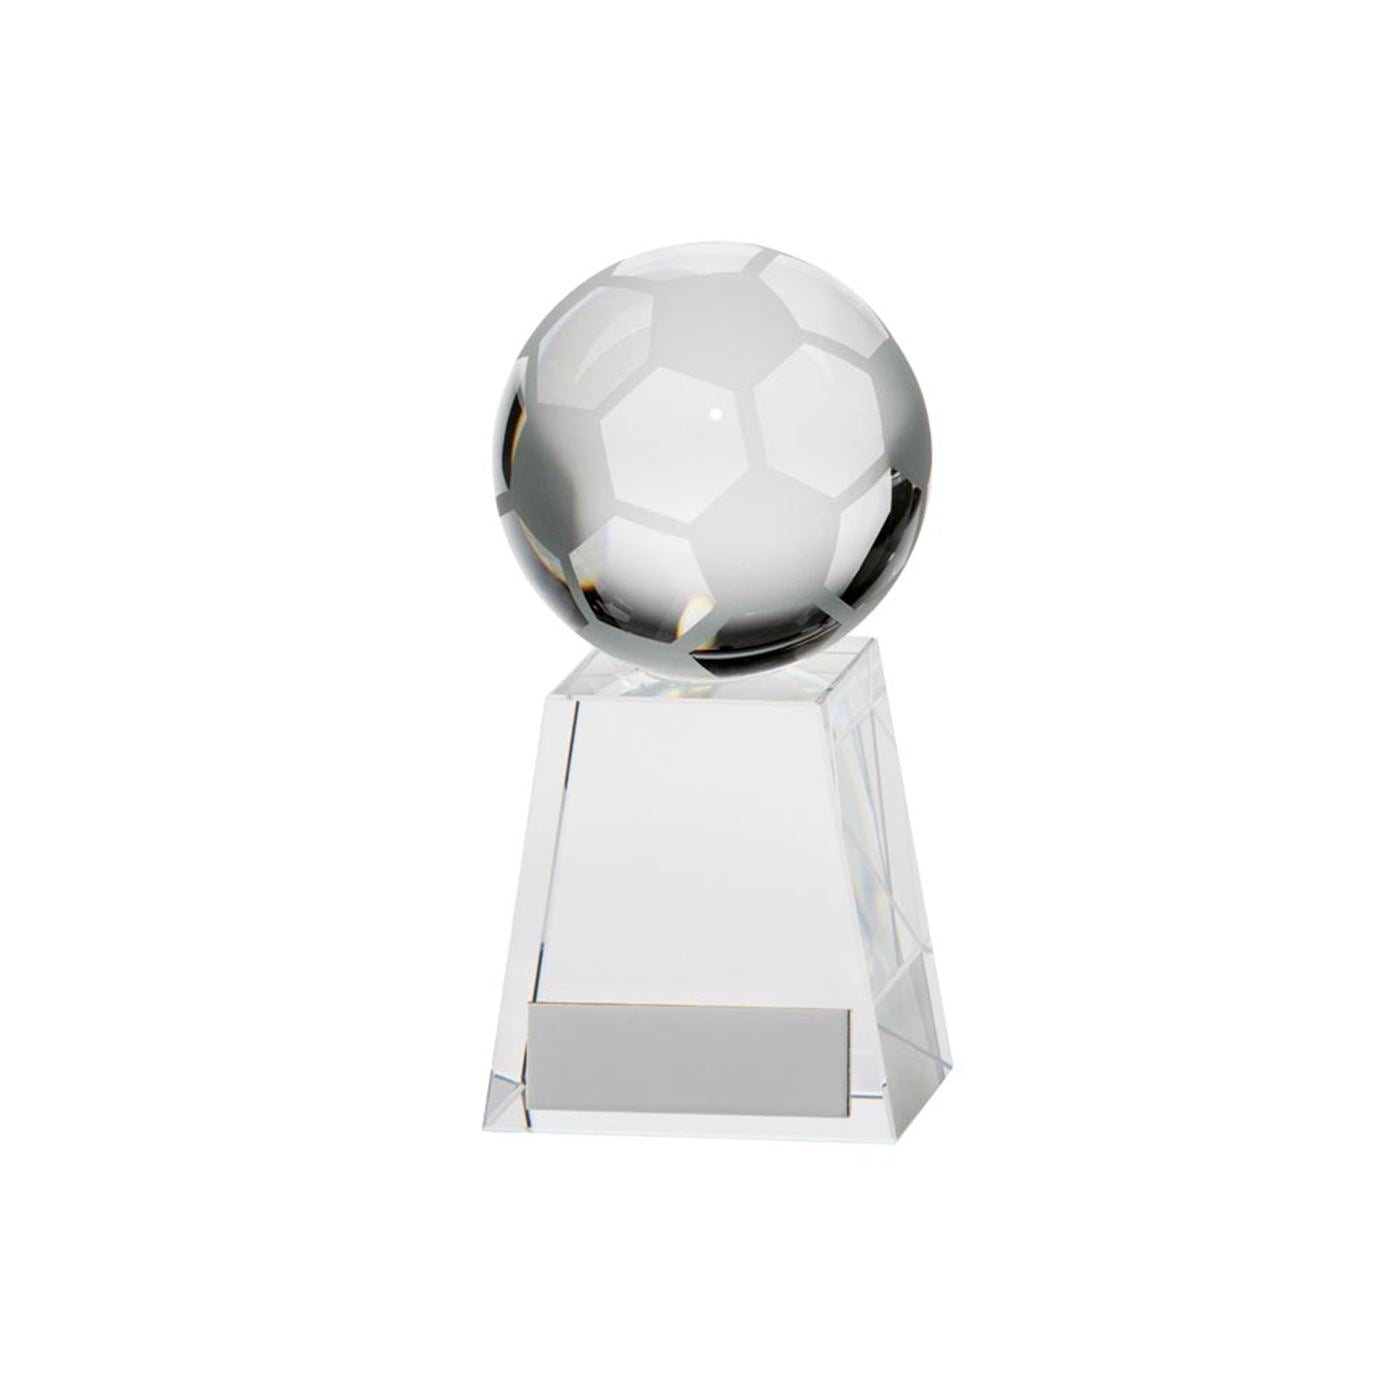 Voyager Crystal Football Award